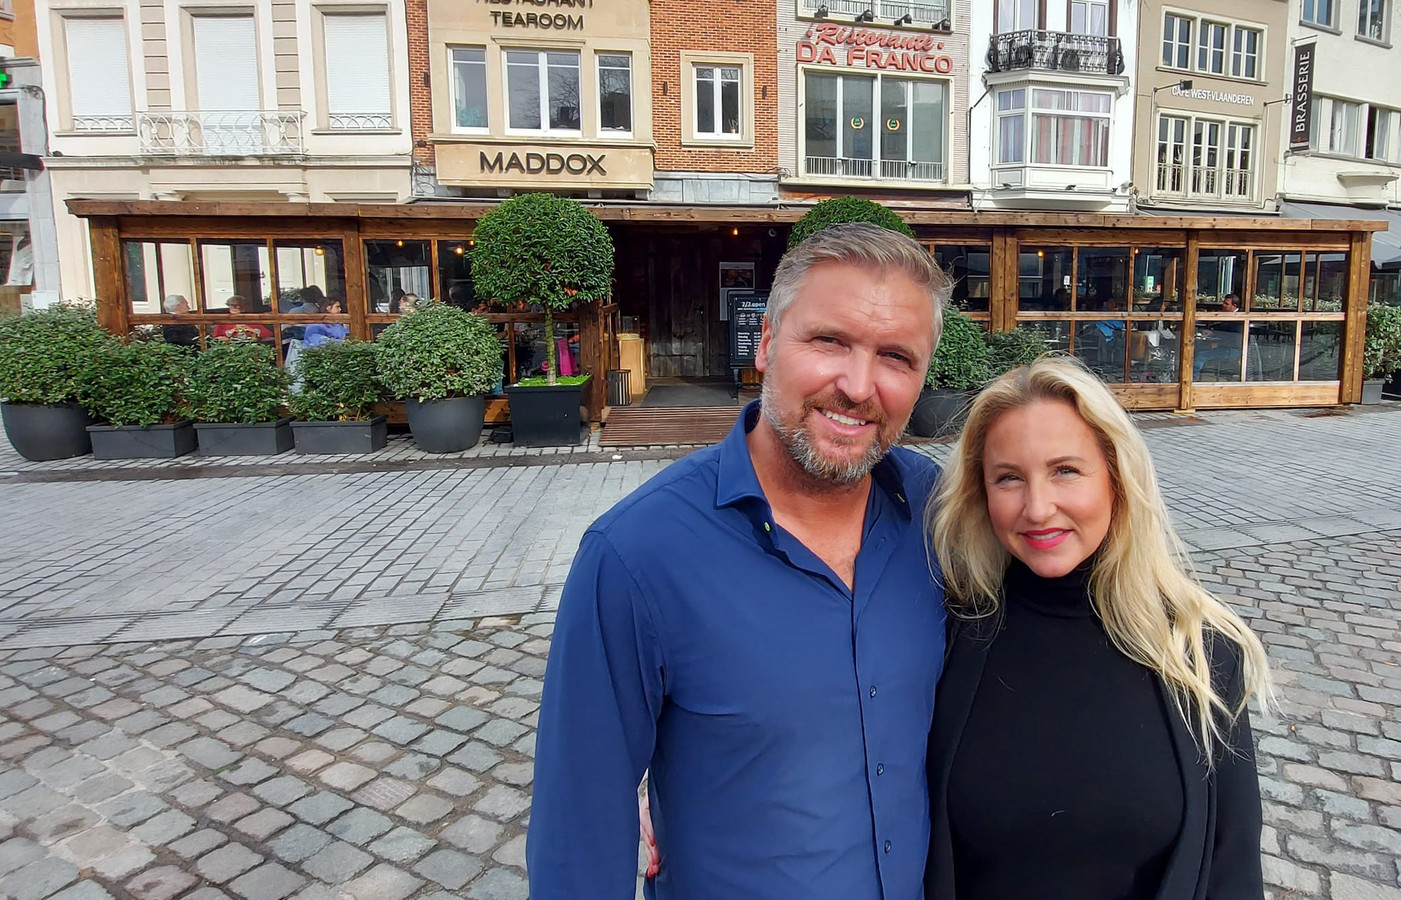 Bewonderenswaardig Aanleg Auckland Maddox koopt Da Franco op Grote Markt in Kortrijk, voor uitbreiding  populair restaurant-tapasbar: “Het zal onze klanten ademruimte geven” |  Foto | hln.be